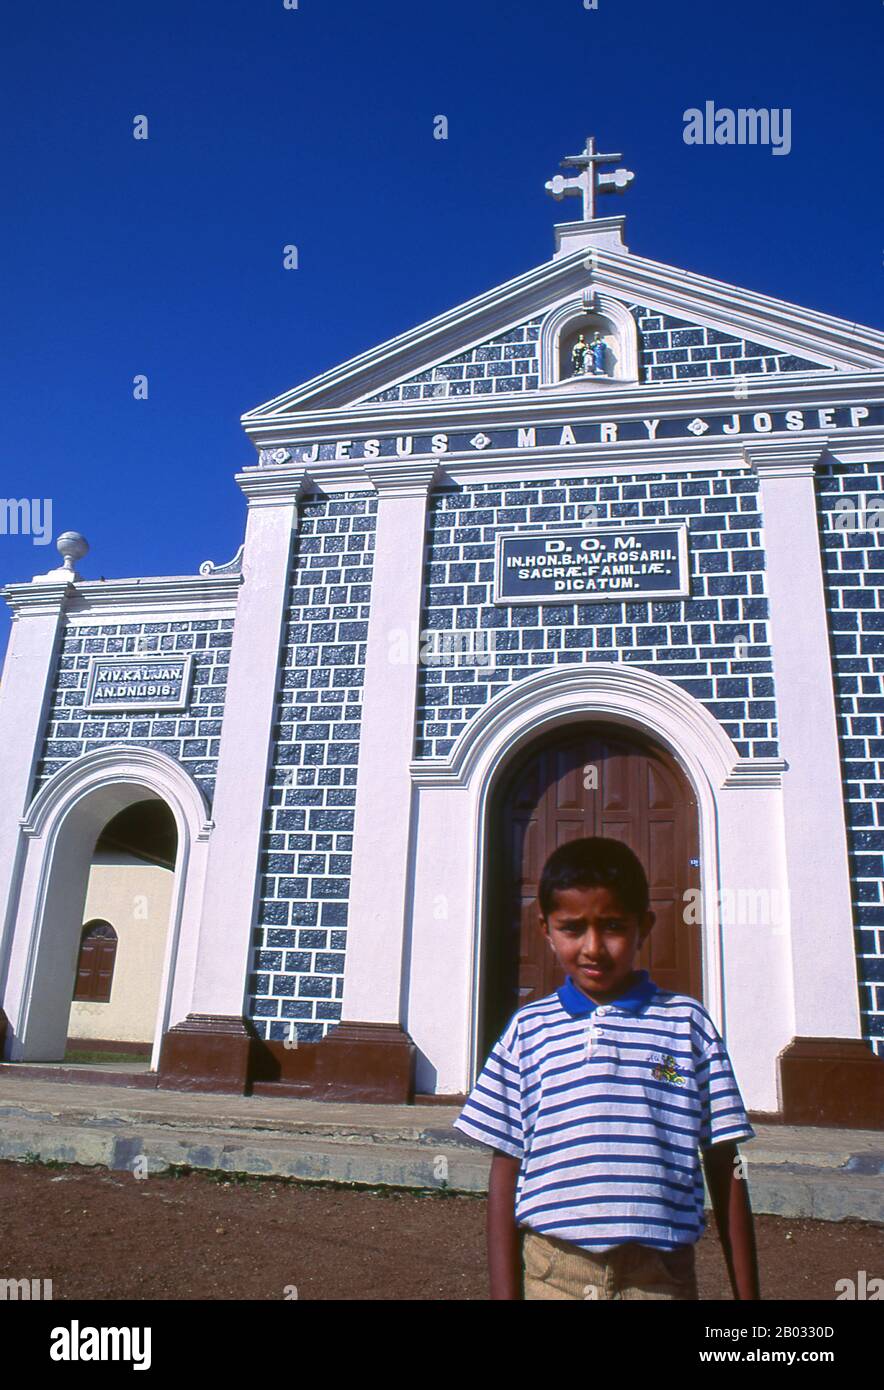 Costruita originariamente nel 1916, la chiesa cattolica del Santo Rosario è stata completamente rinnovata nel 2013. Il cristianesimo, introdotto in Sri Lanka dai portoghesi, è prevalentemente di varietà cattolica romana e più visibile lungo la costa occidentale, soprattutto intorno a Negombo. Foto Stock